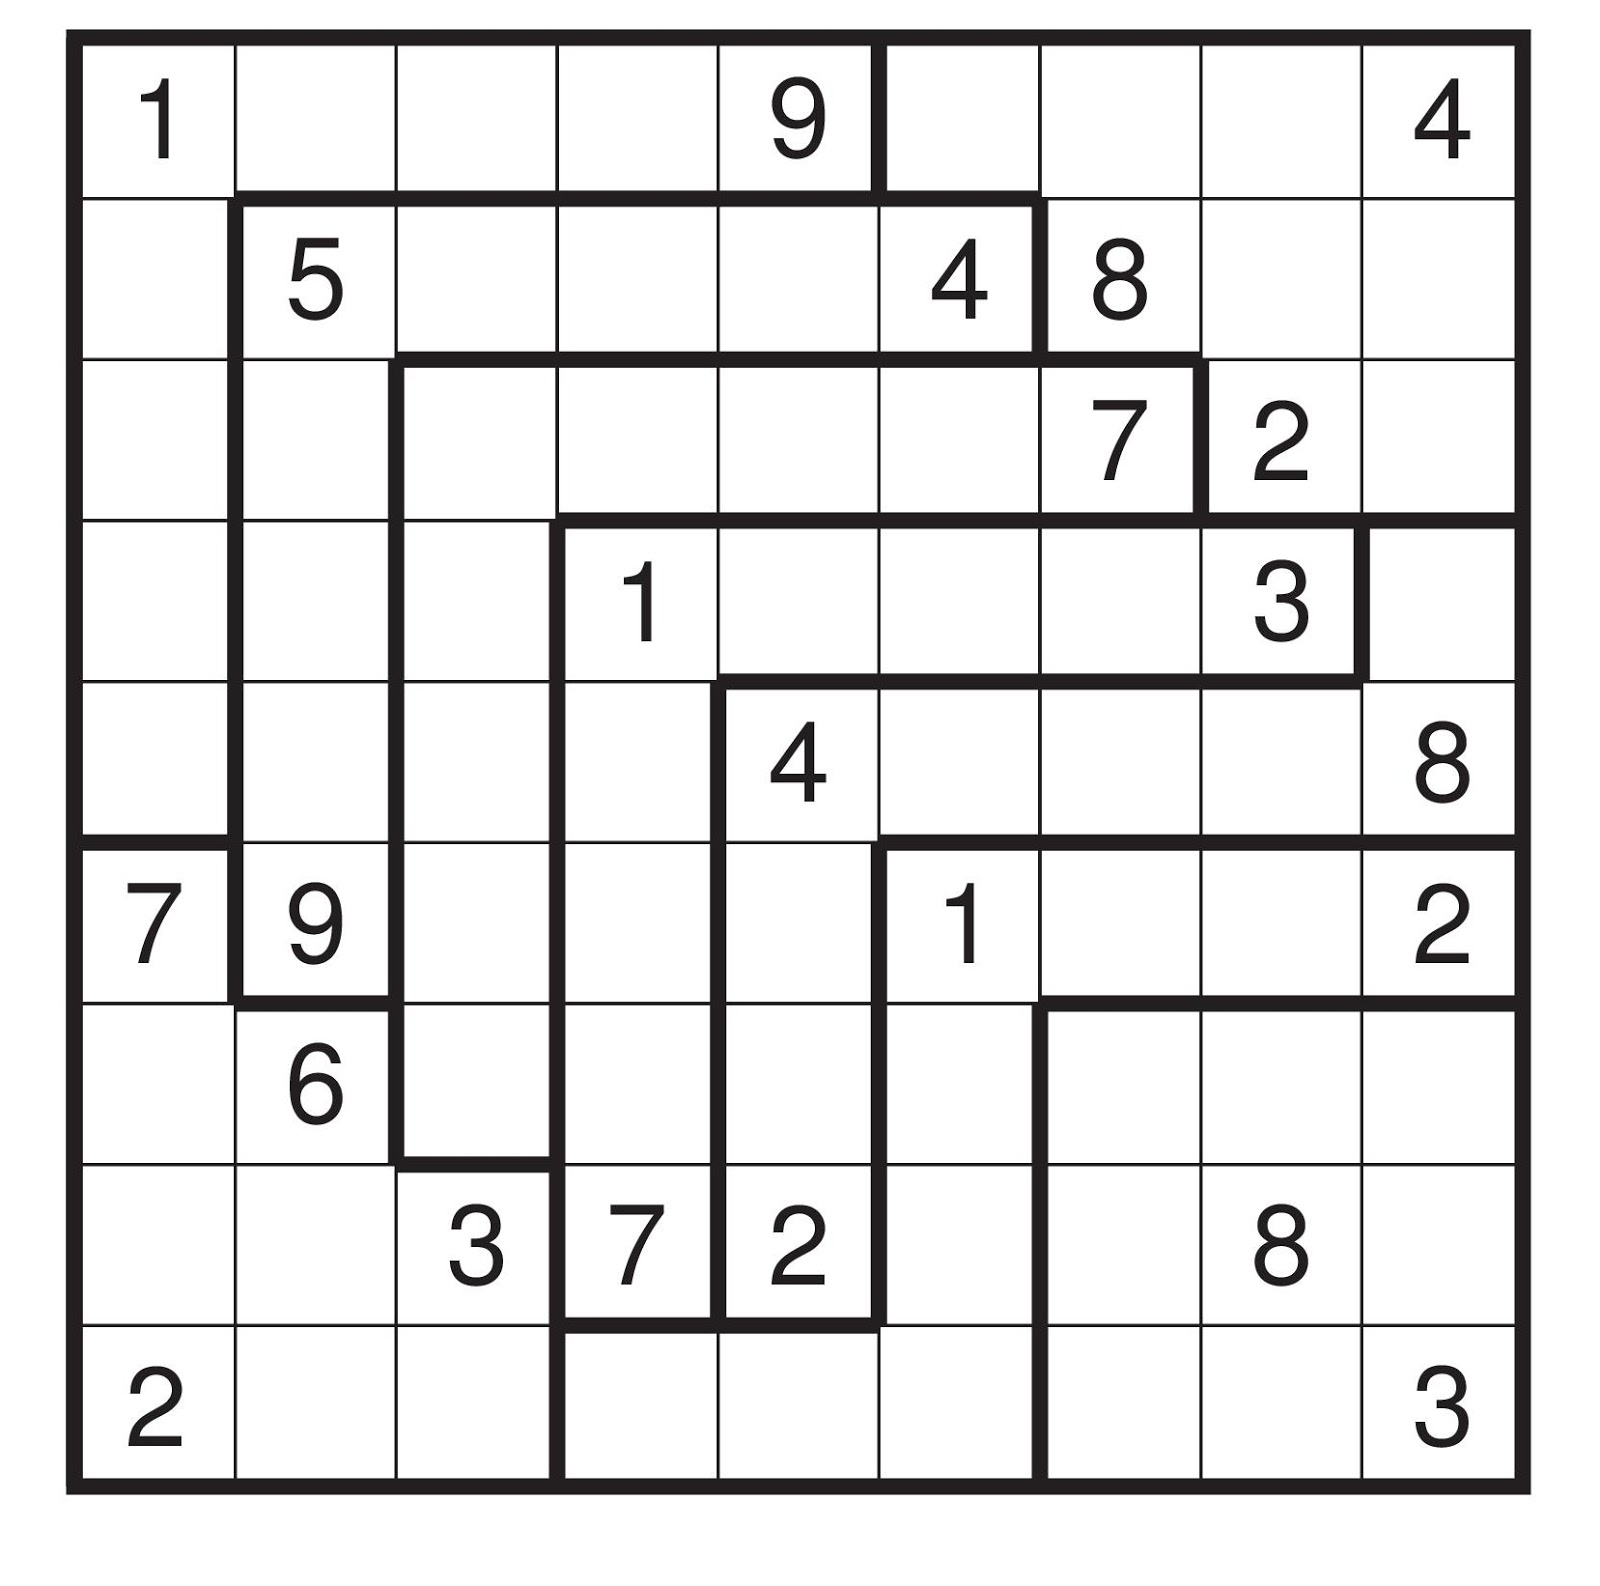 Irregular Sudoku Printable FreePrintableTM com FreePrintableTM com